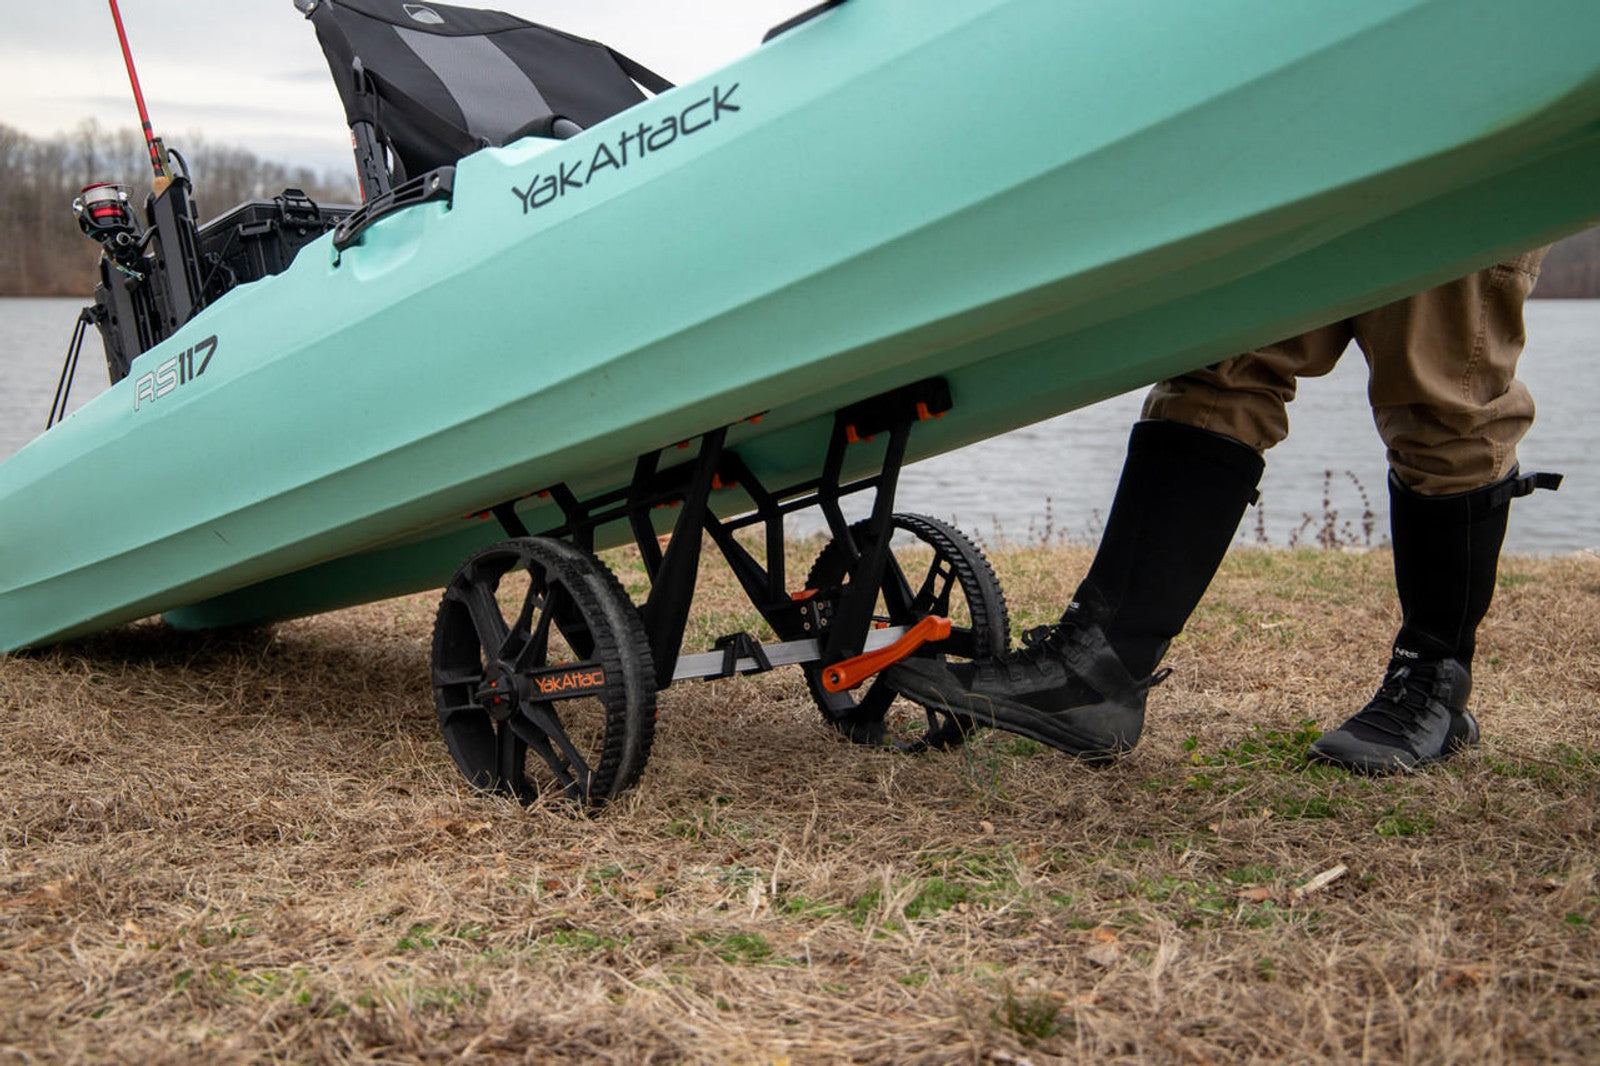 YakAttack - TowNStow Bunkster Kayak Cart